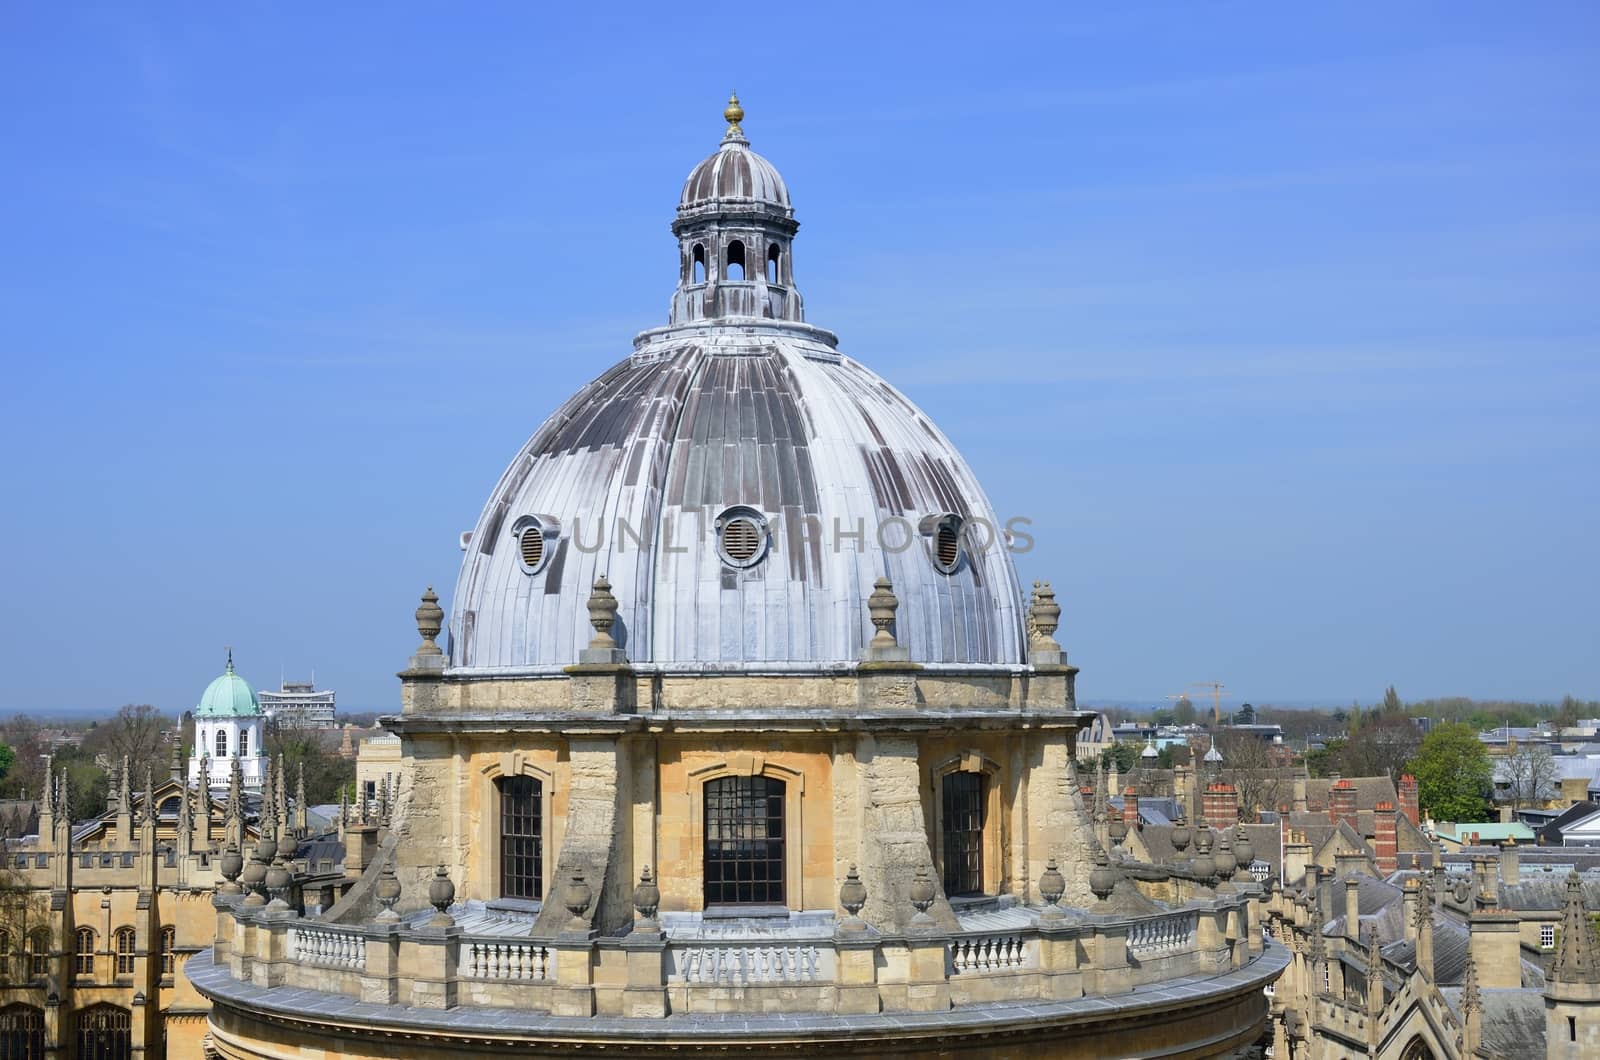 Dome of Oxford Camera